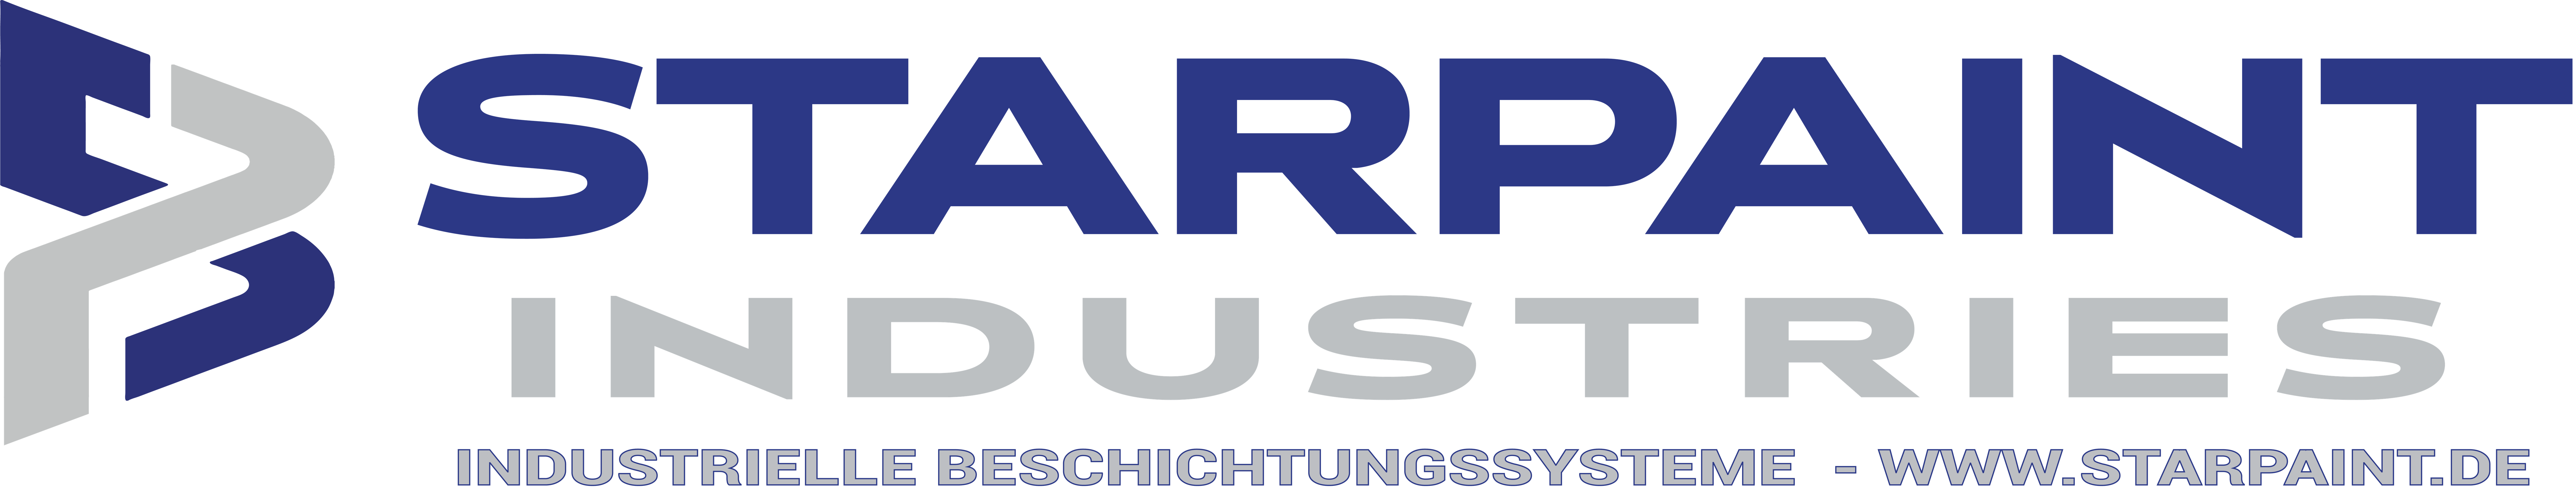 STARPAINT Industries Industrieausrüster für Oberflächentechnik in der Lackindustrie Austria, Germany, Switzerland, Netherlands, France, Belguim, Czechia, Poland, EU.